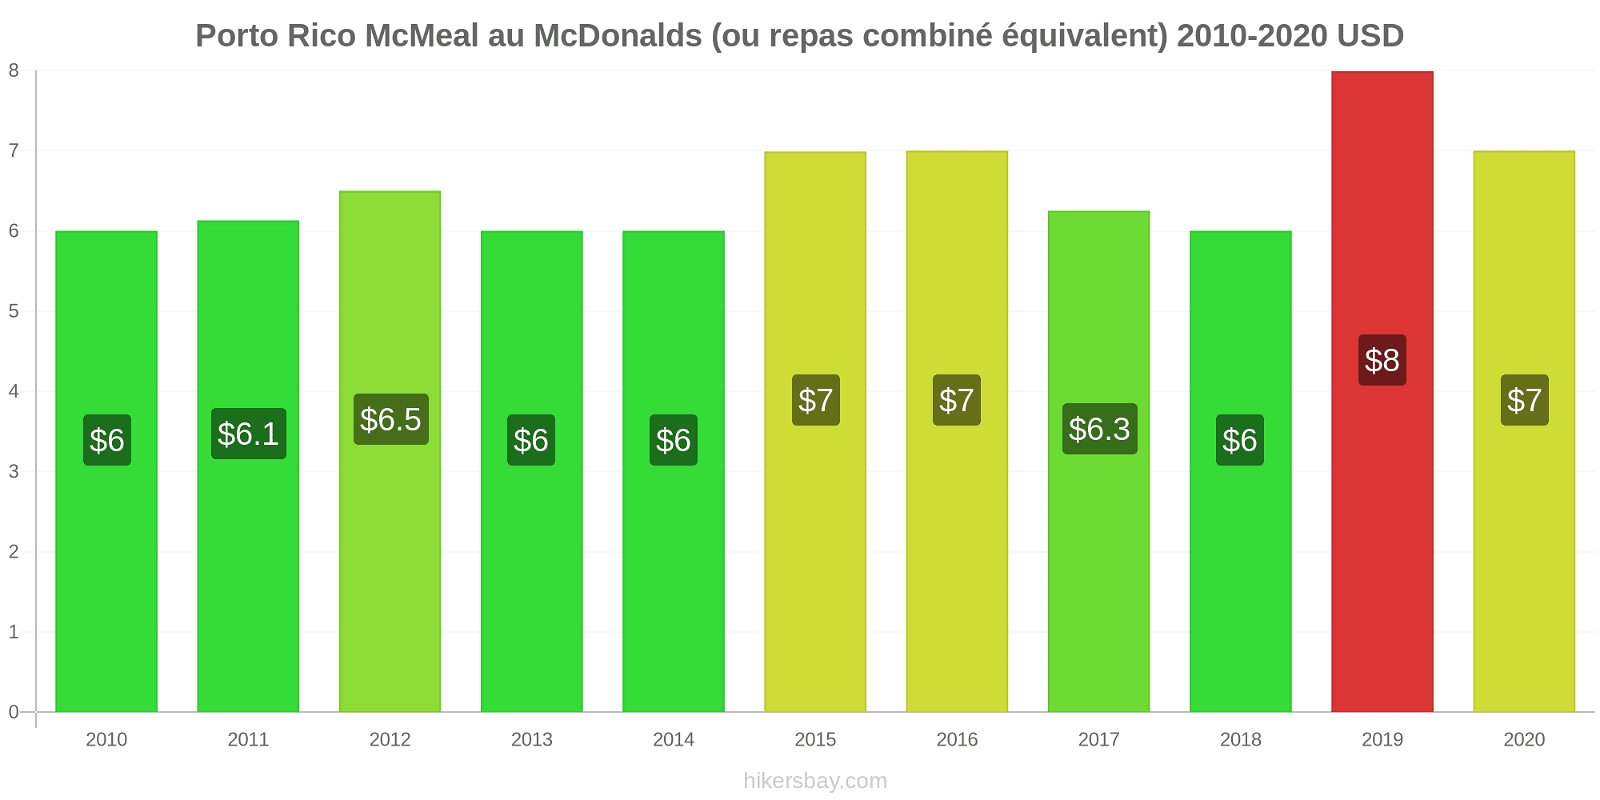 Porto Rico changements de prix McMeal à McDonald ' s (ou Combo équivalent tourteau) hikersbay.com